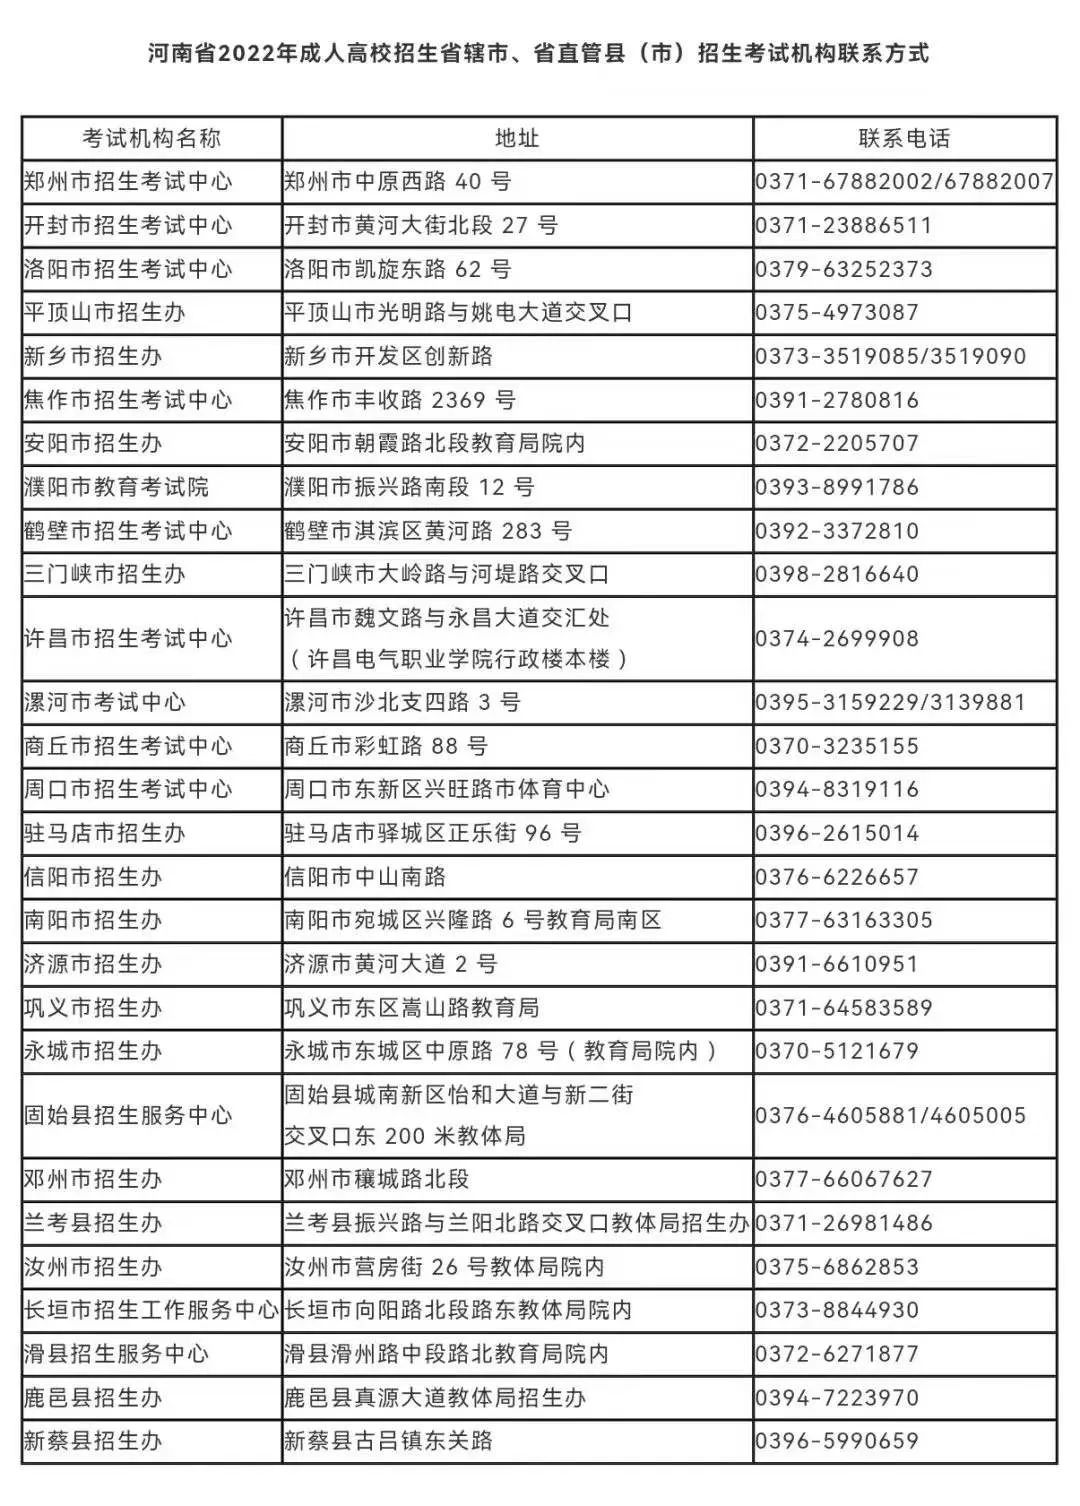 河南省各地考试机构联系电话